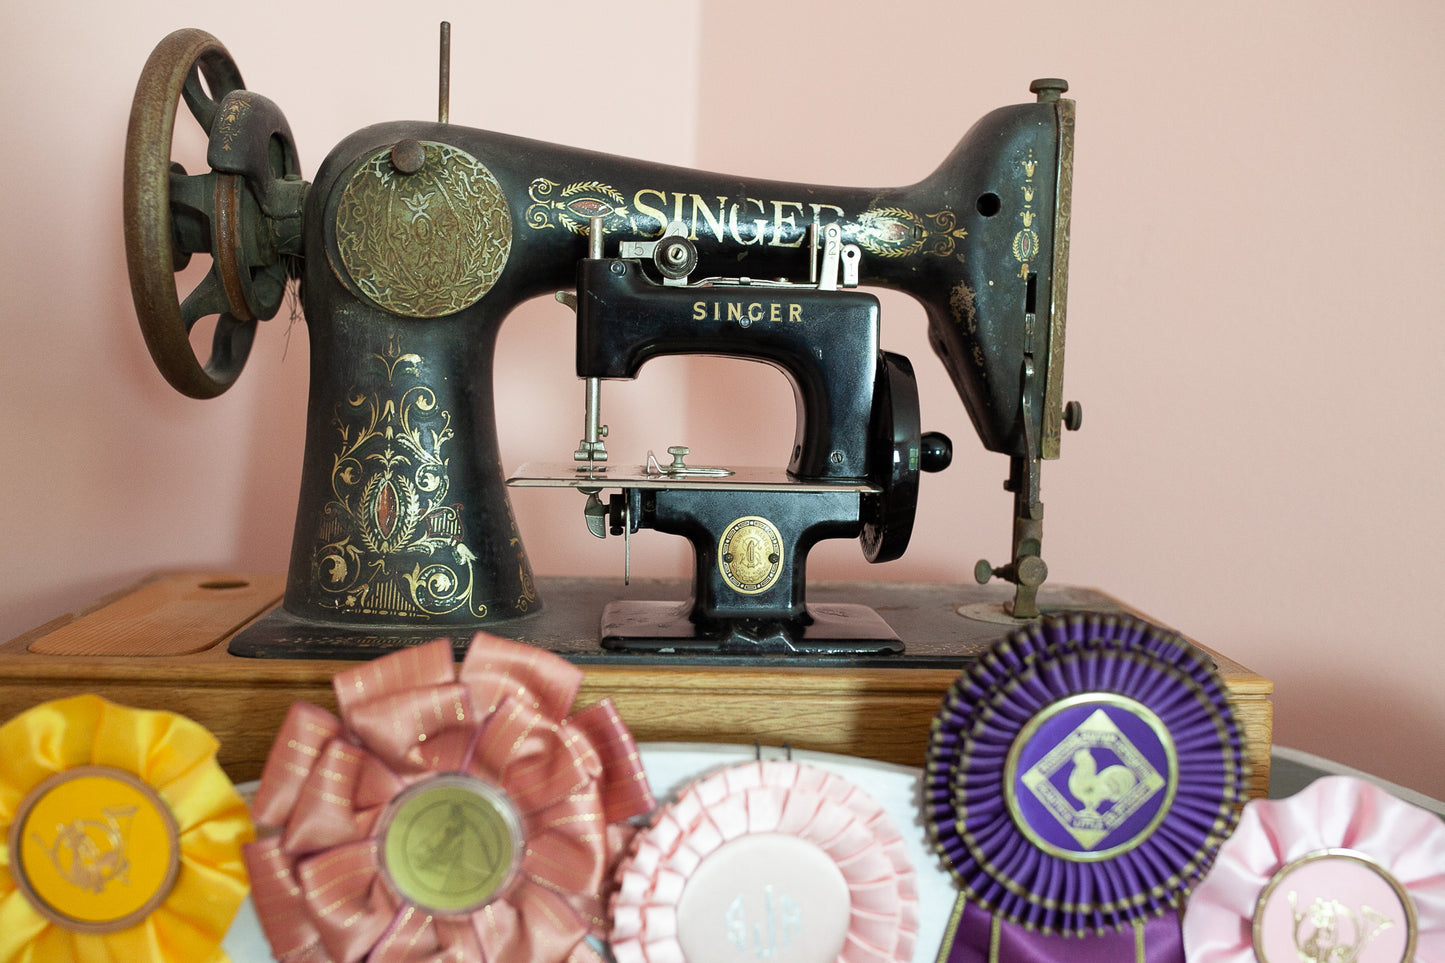 Vintage Singer Sew Handy Children's Sewing Machine Model 20-Vintage Miniature Singer Sewing Machine-Vintage Singer Children's Sewing Machine